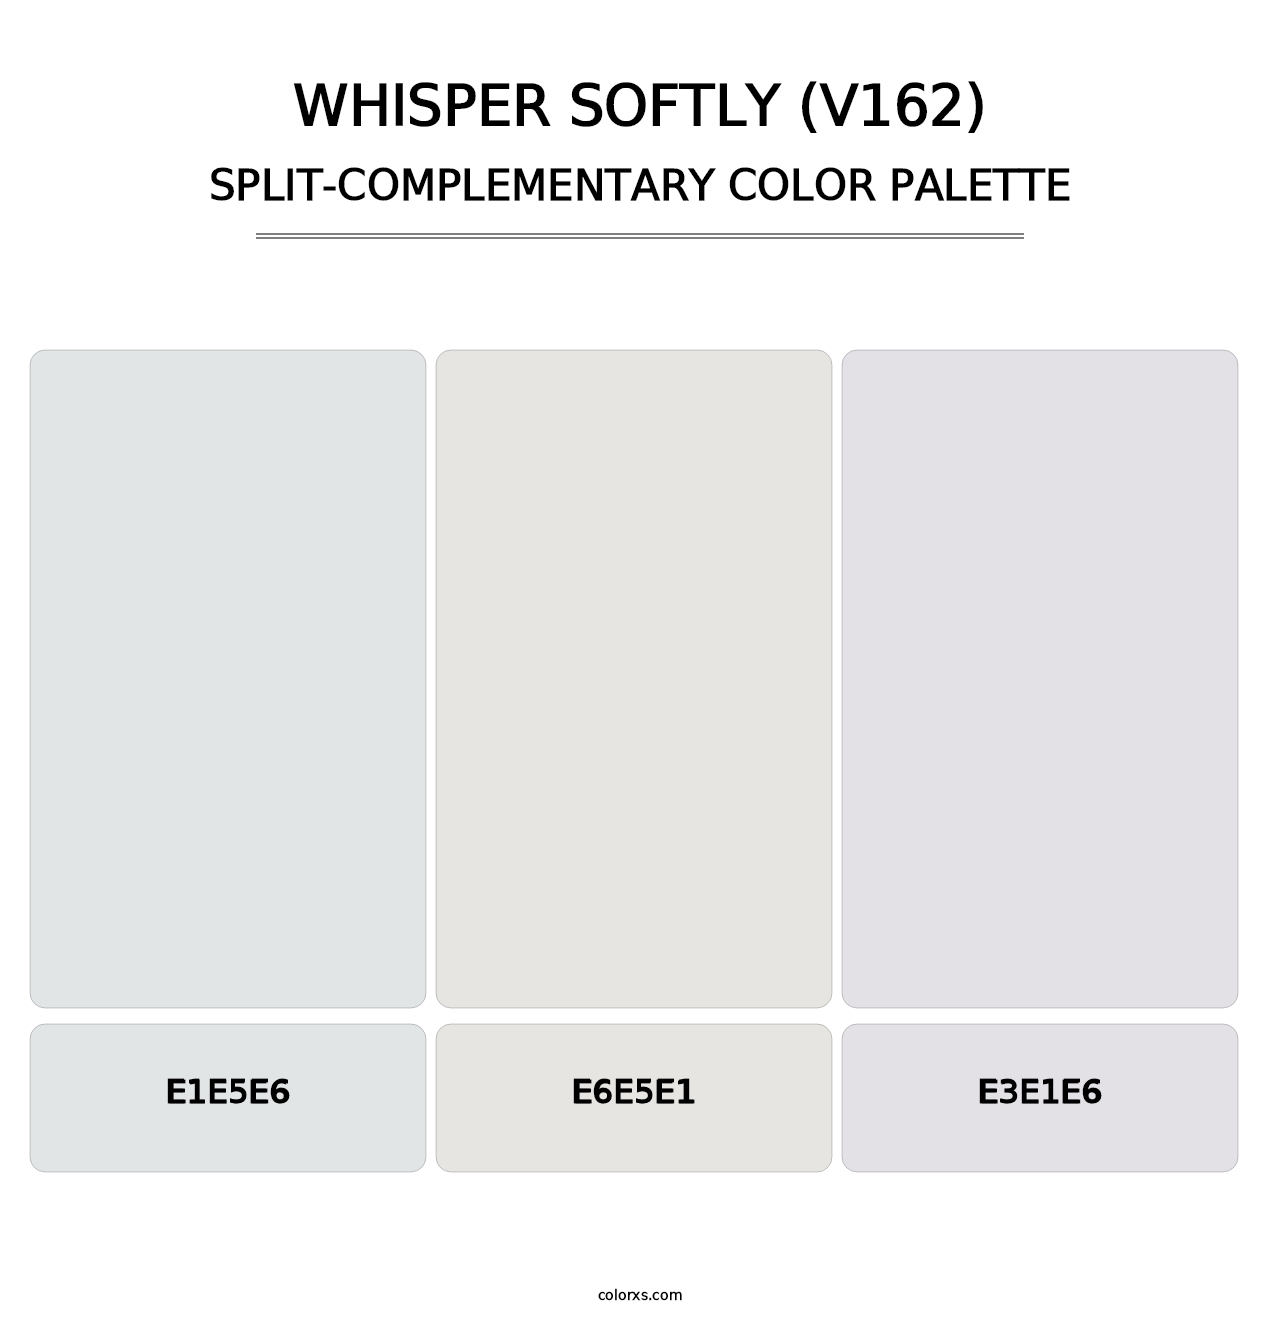 Whisper Softly (V162) - Split-Complementary Color Palette